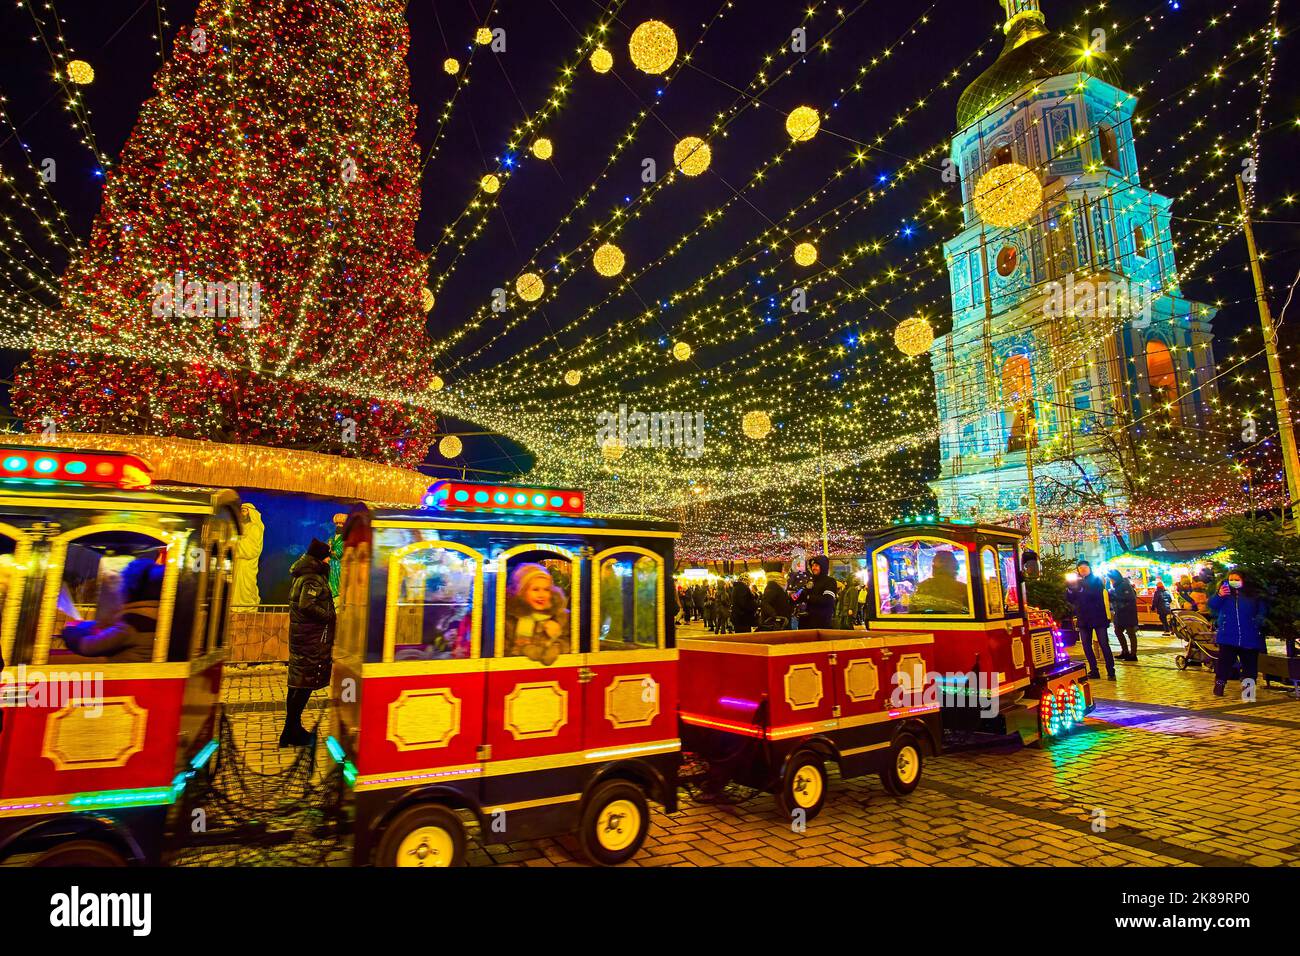 KIEV, UCRAINA - 28 DICEMBRE 2021: Il treno turistico colorato, in giro per le bancarelle della Fiera di Natale e l'albero di Natale in Piazza Sophia, il mese di dicembre Foto Stock